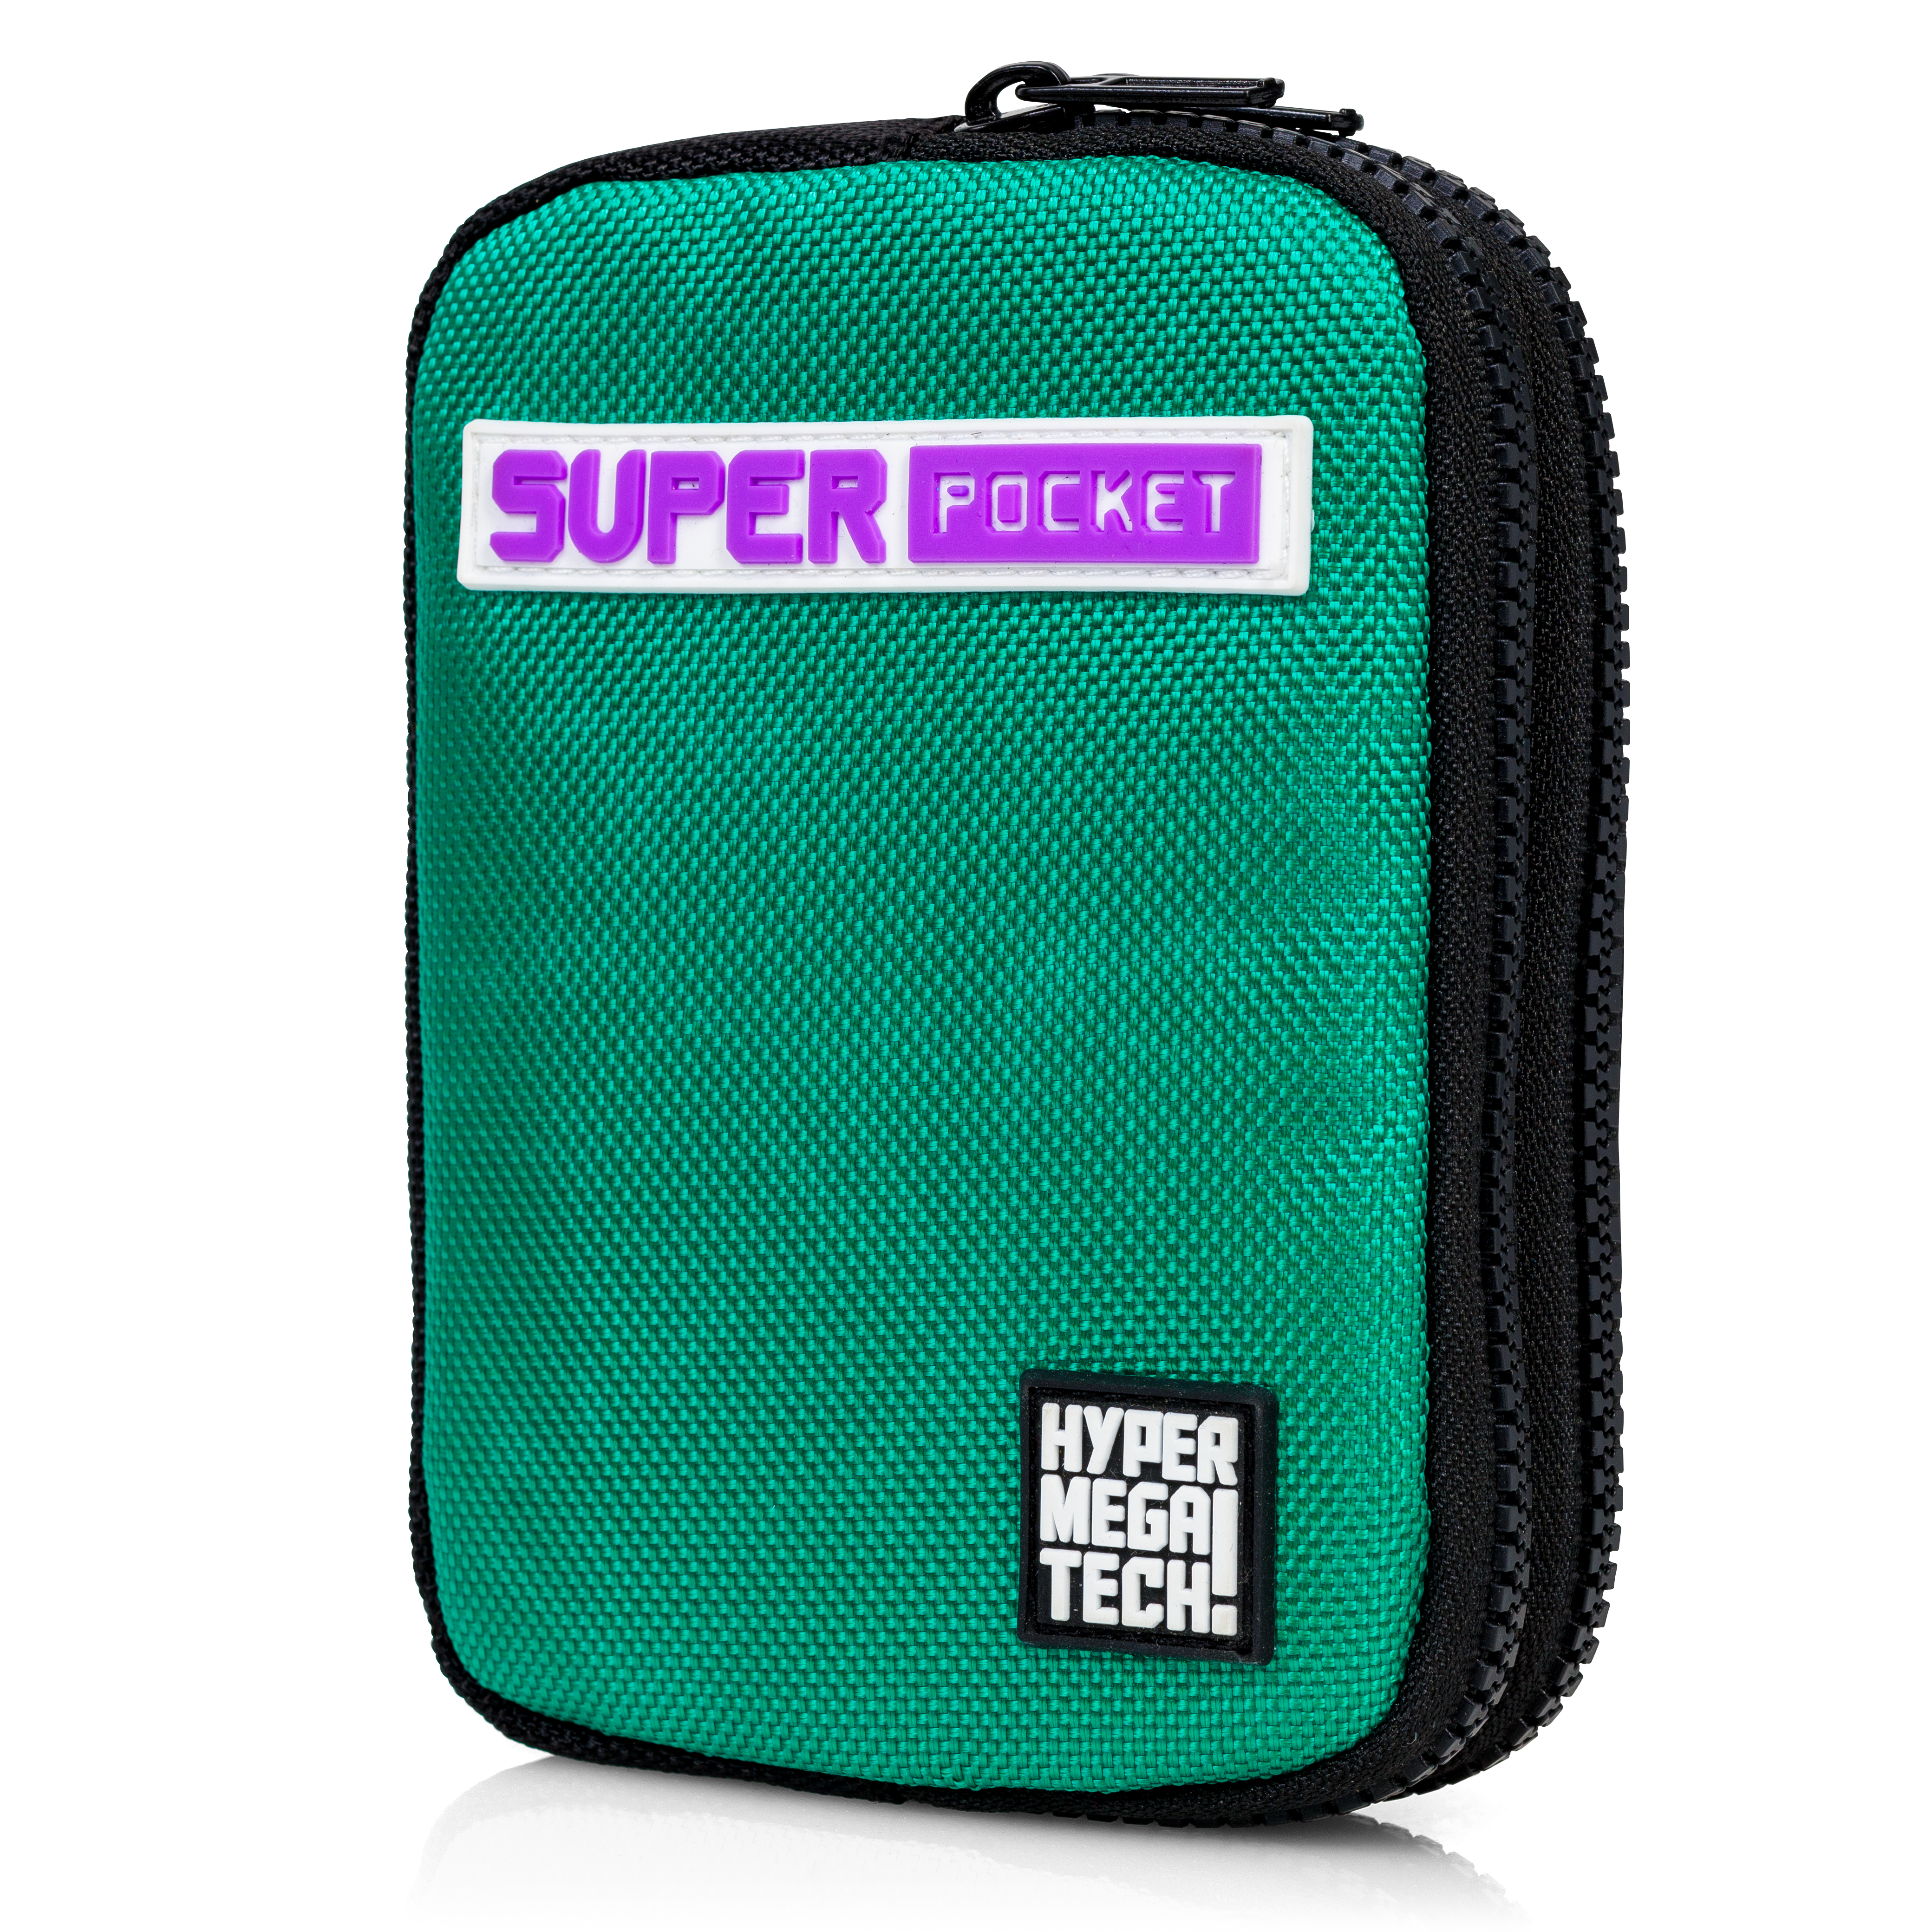 Super Pocket Blaze Taito Cover - Green